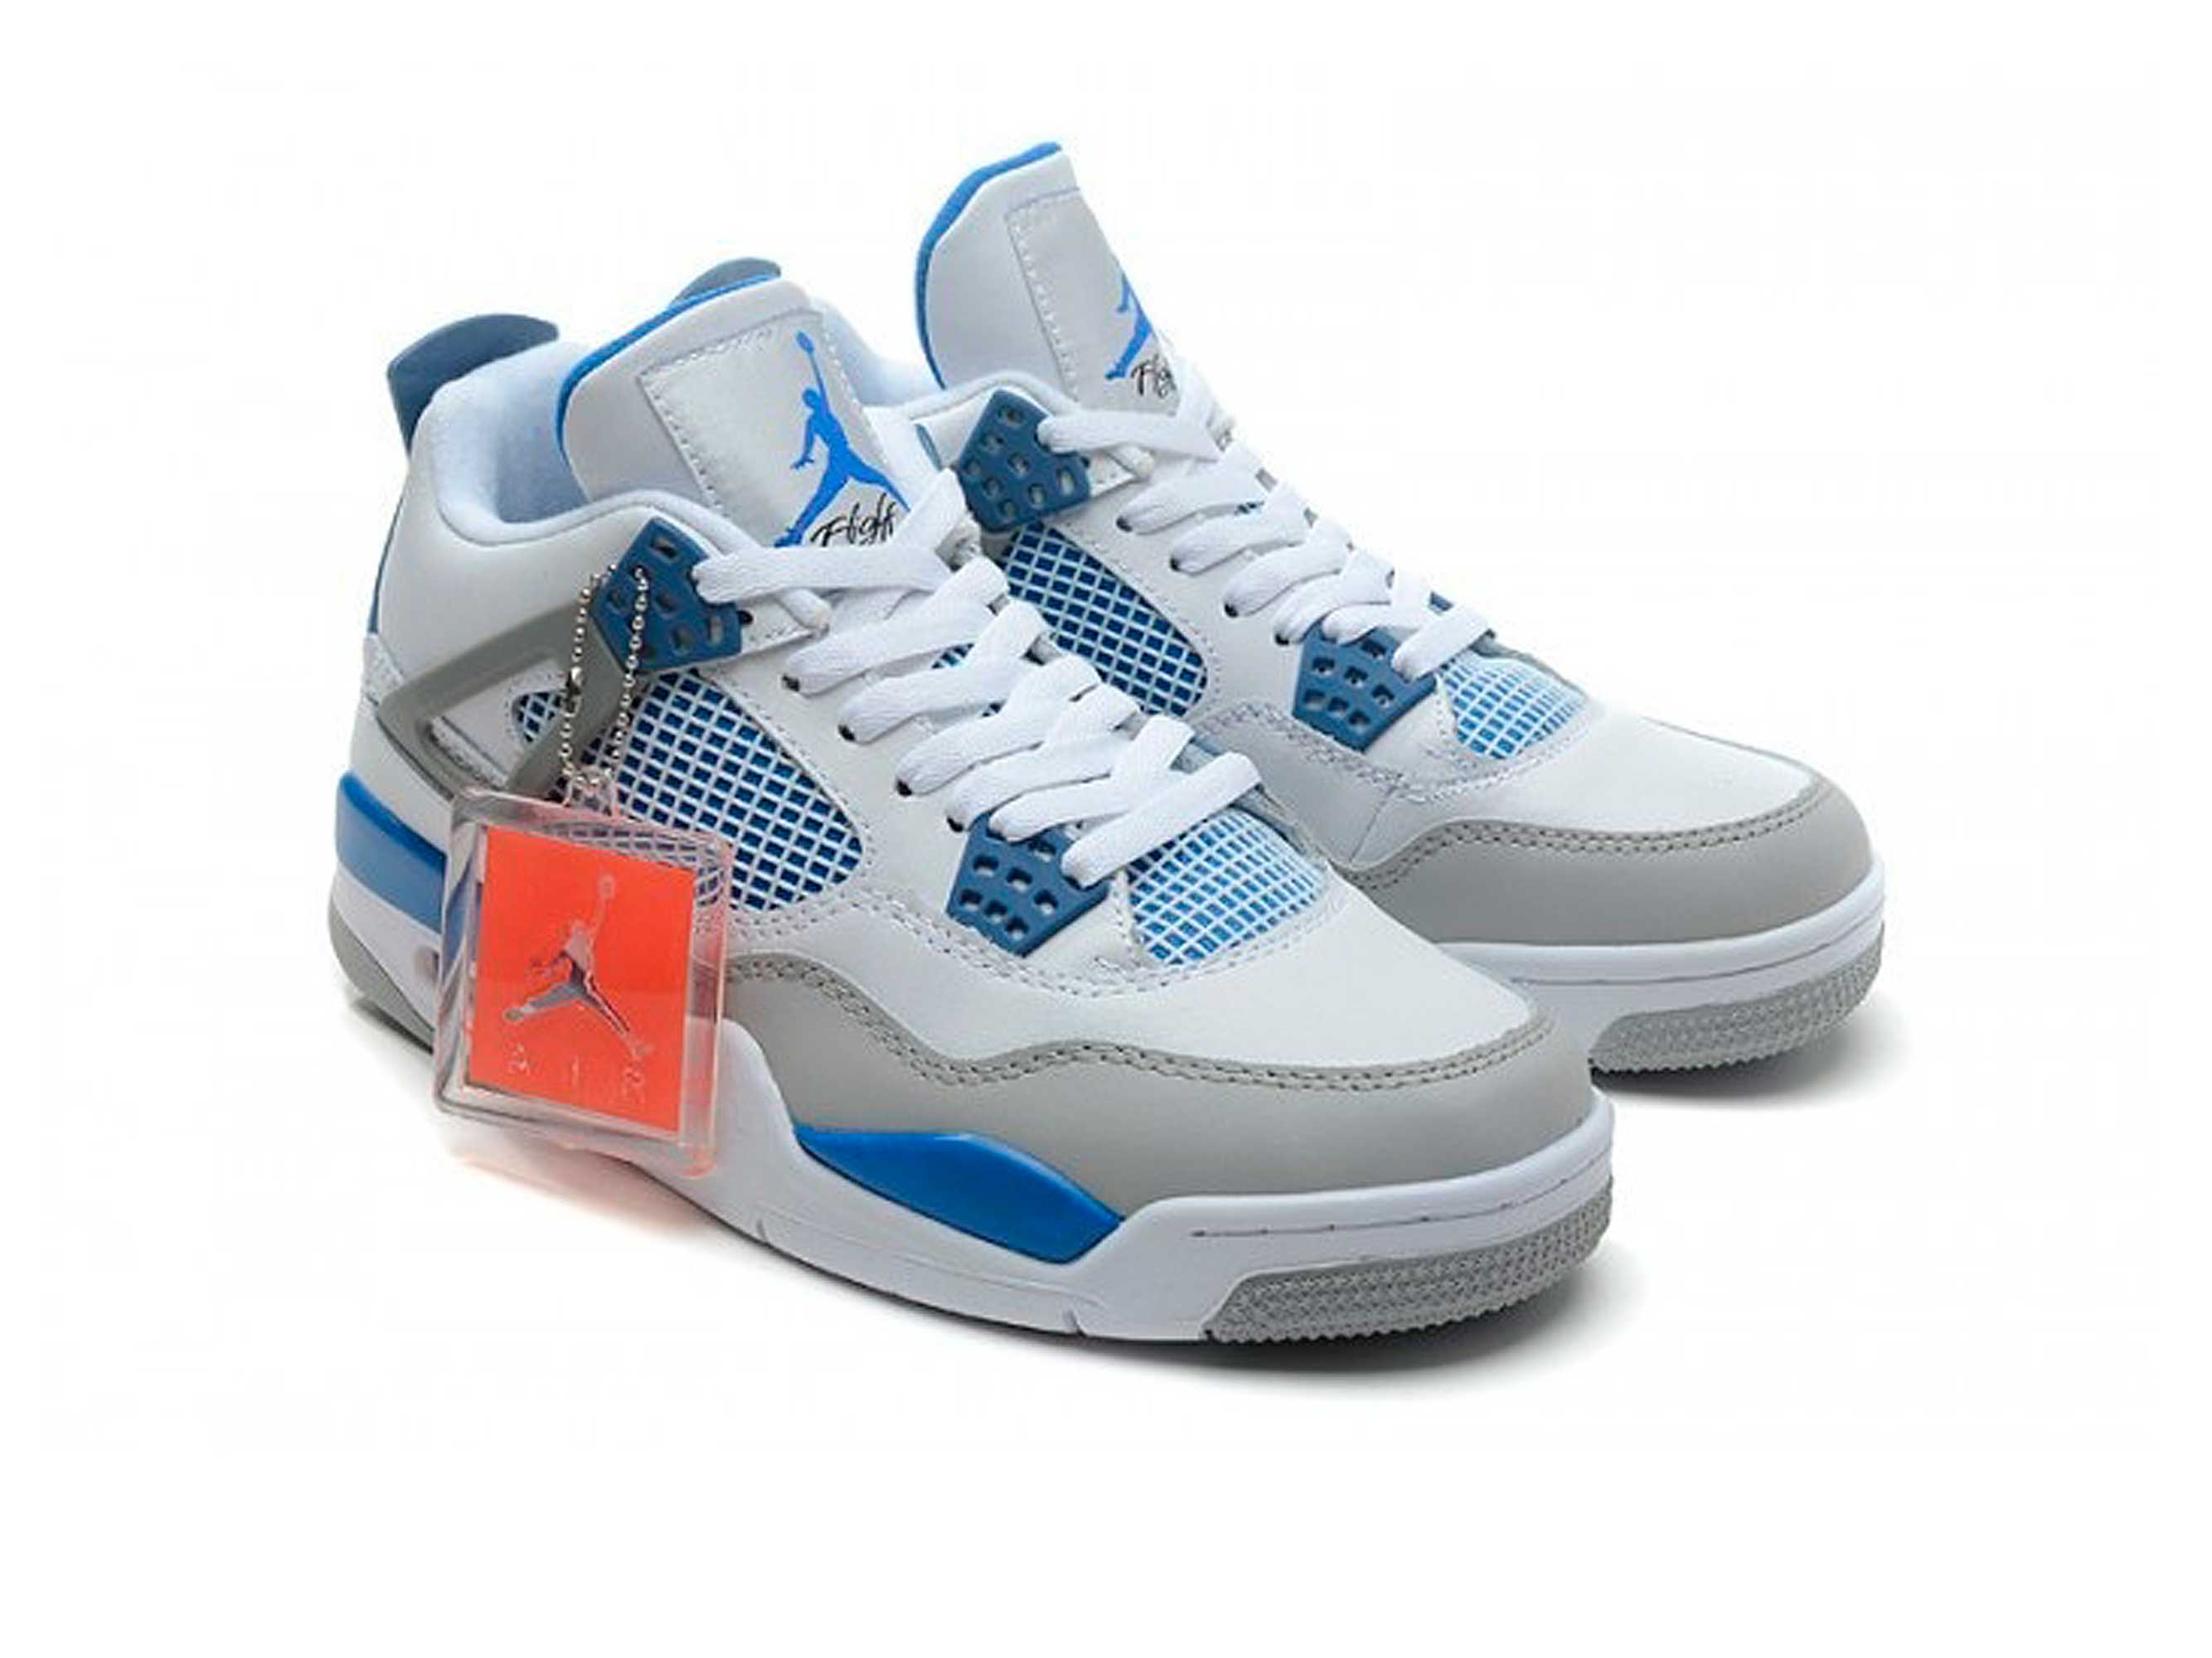 Nike air jordan 4 blue. Nike Air Jordan 4 Retro White Military Blue Grey. Nike Air Jordan 4 White. Nike Air Jordan 4 Retro White.